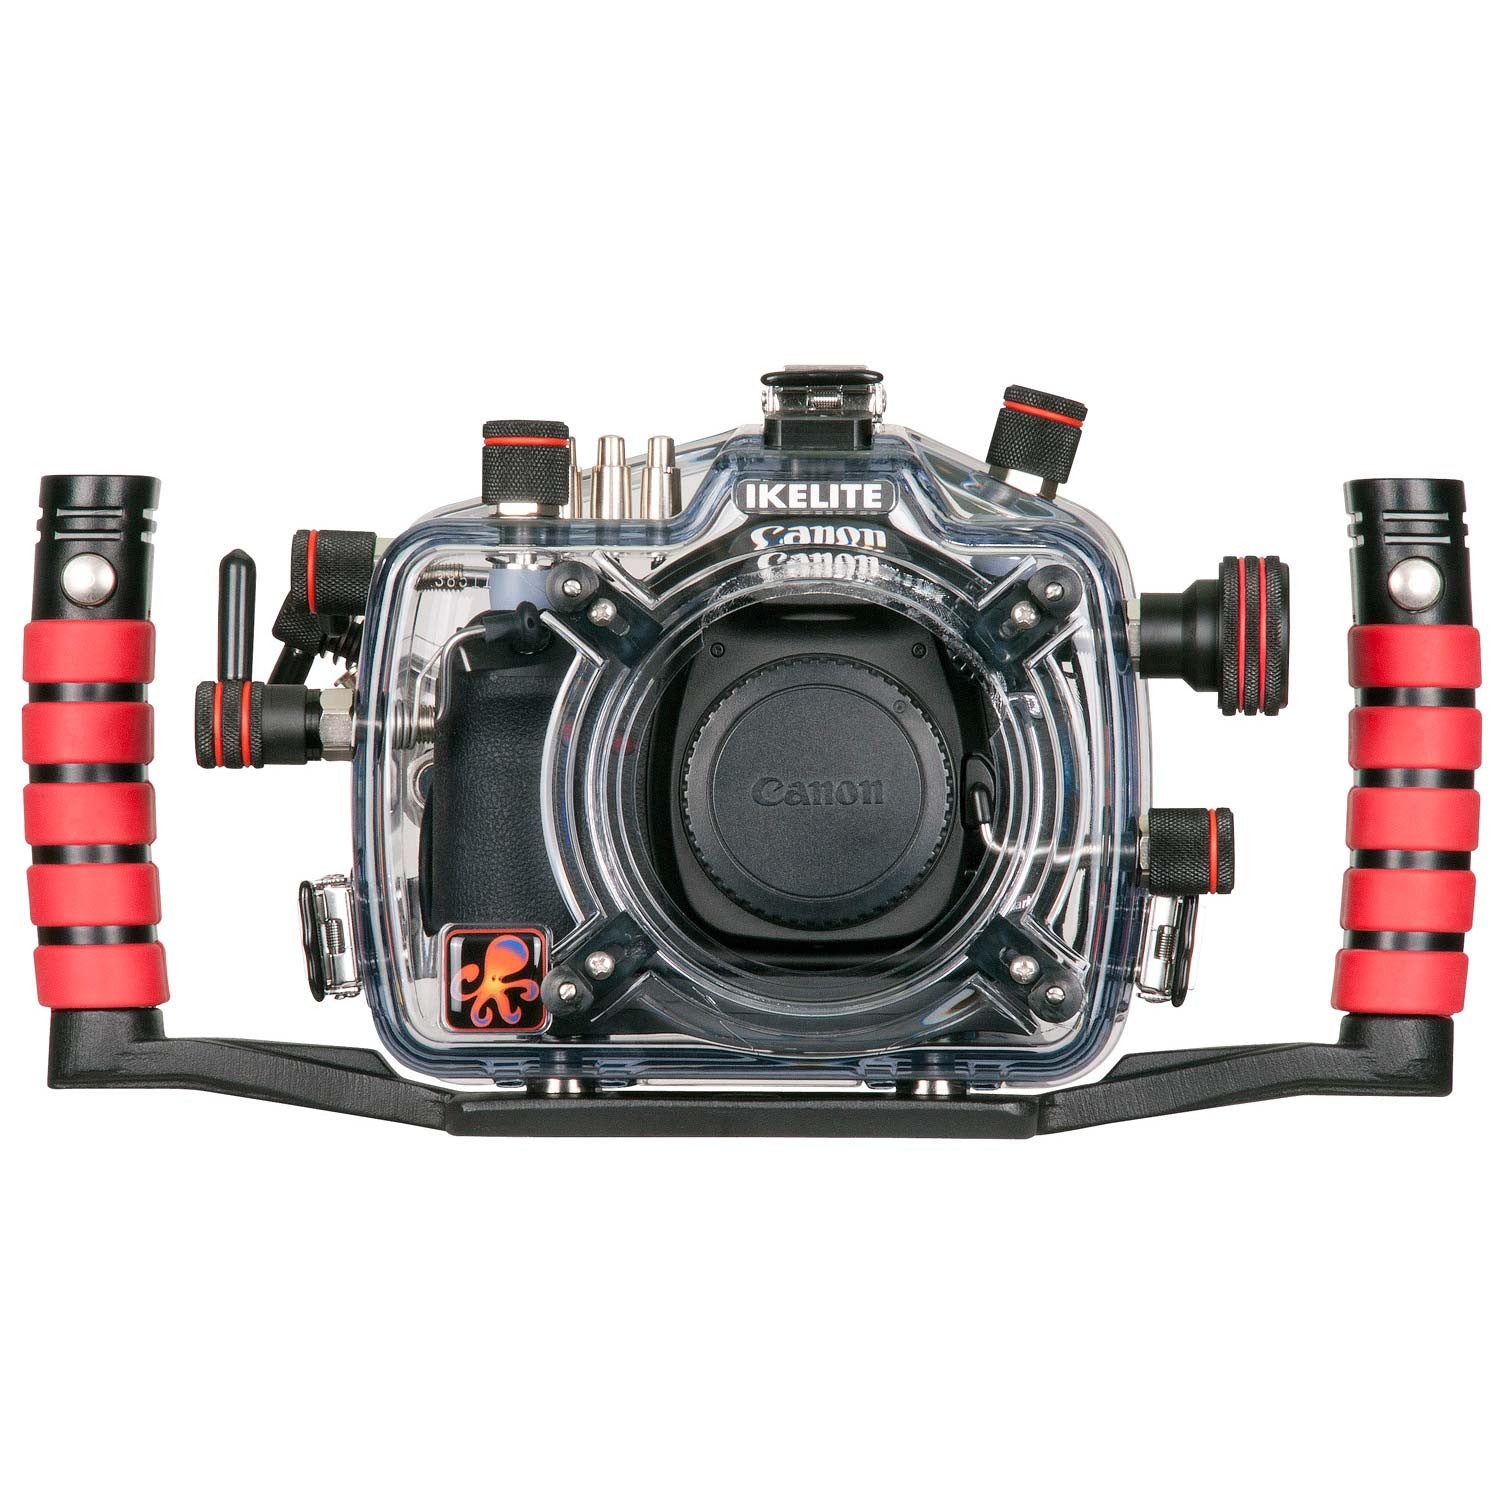 200FL Underwater TTL Housing for Canon EOS 5D Mark II DSLR Camera